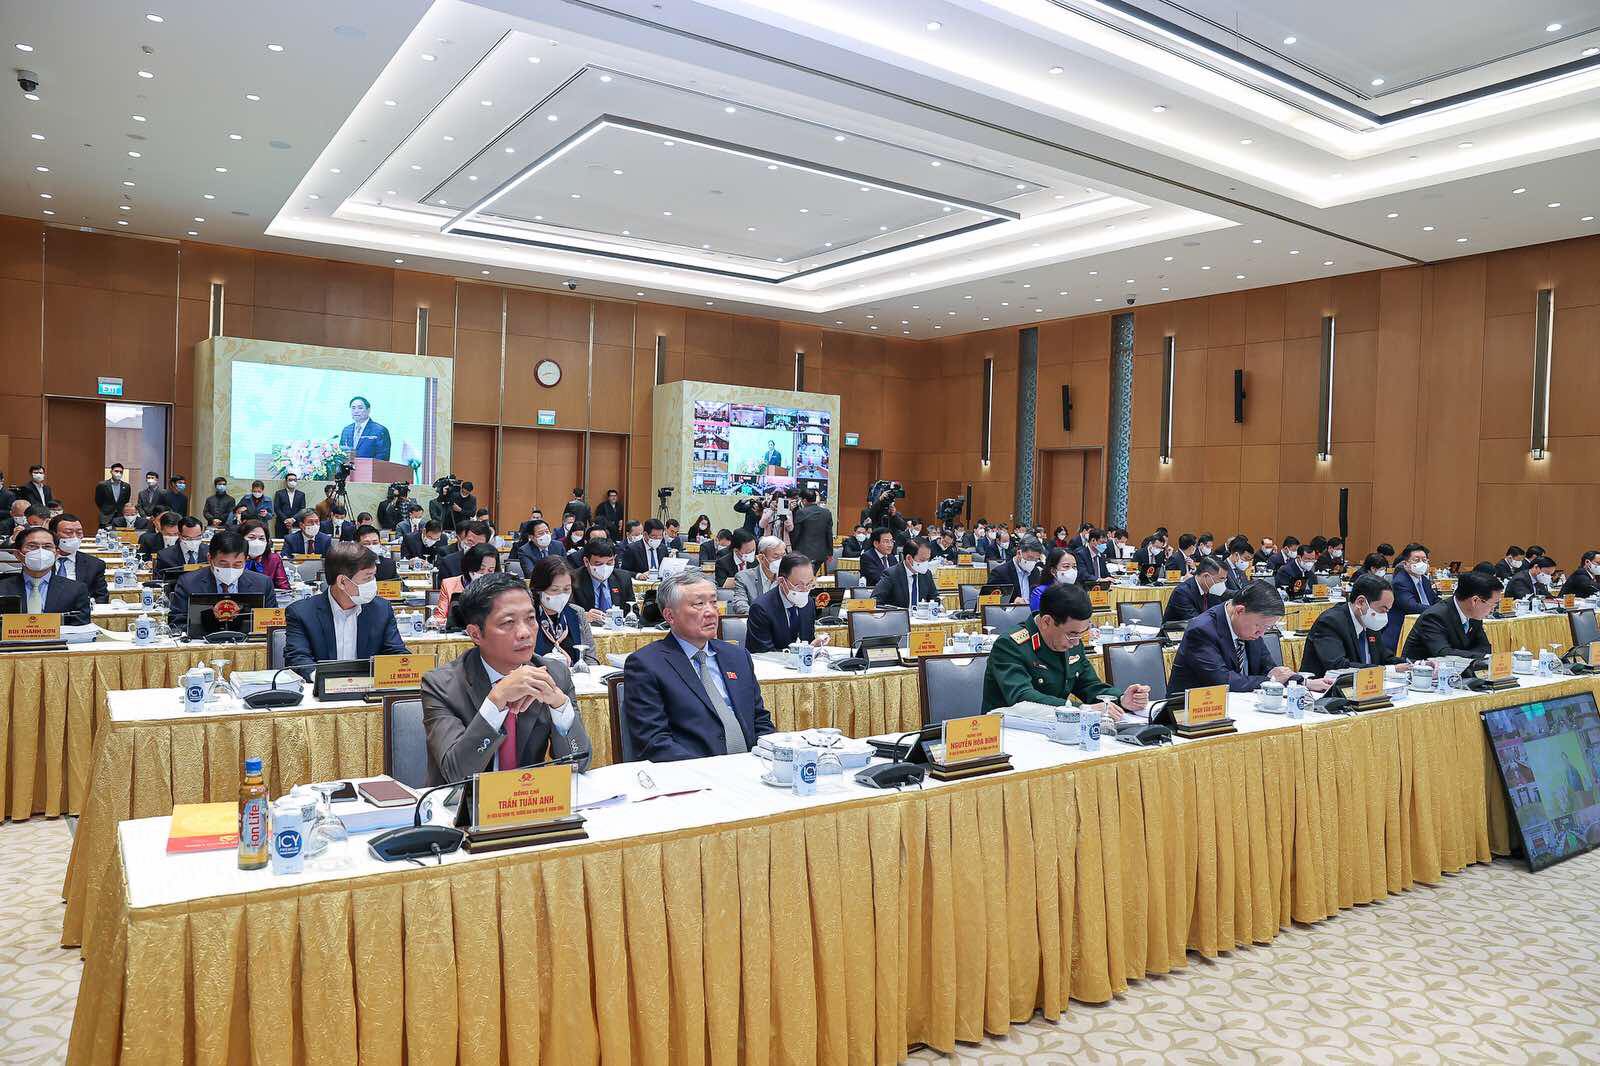 Các đại biểu dự Hội nghị tại điểm cầu Trụ sở Chính phủ, Thủ đô Hà Nội. Ảnh: VGP/Nhật Bắc